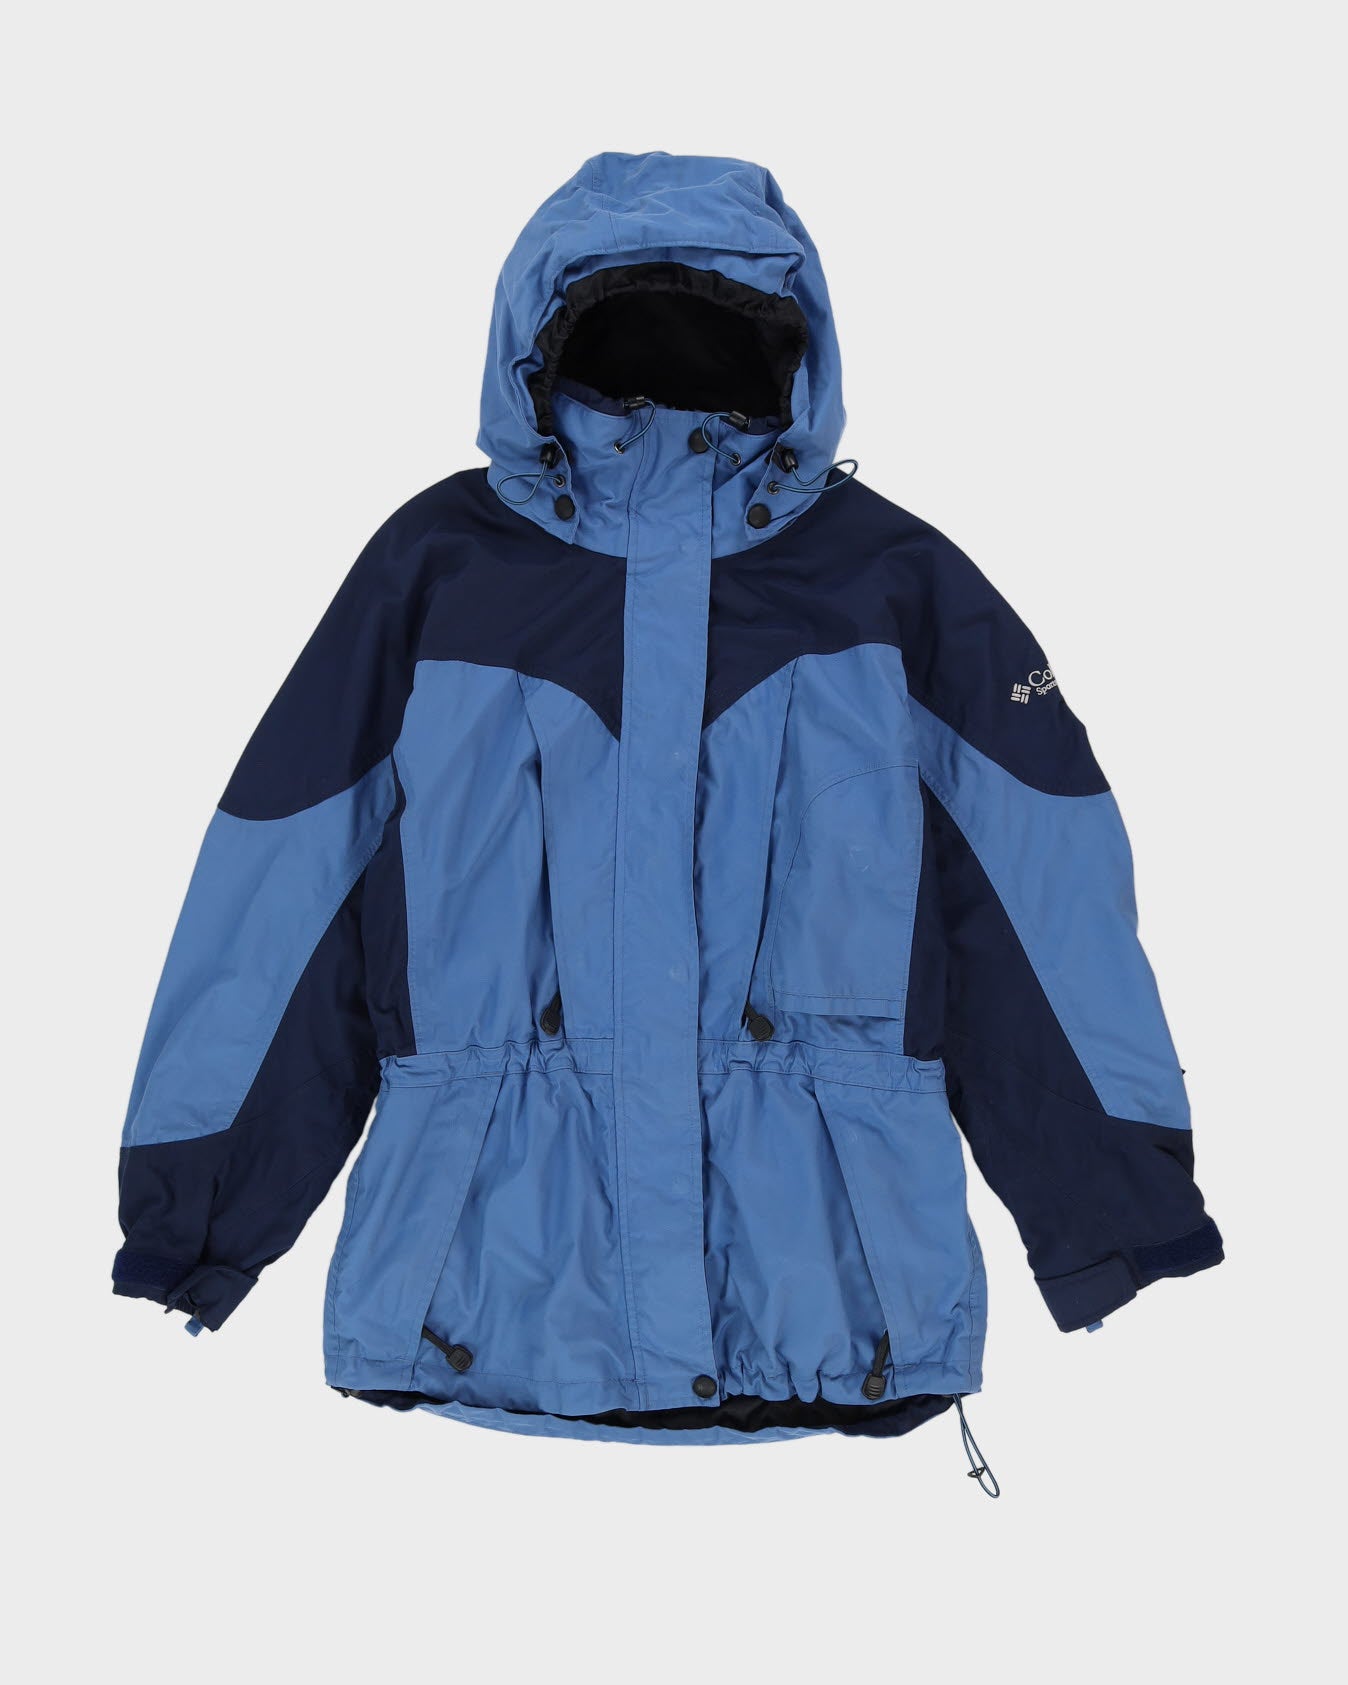 Vintage 90s Columbia Ski Blue Jacket - M